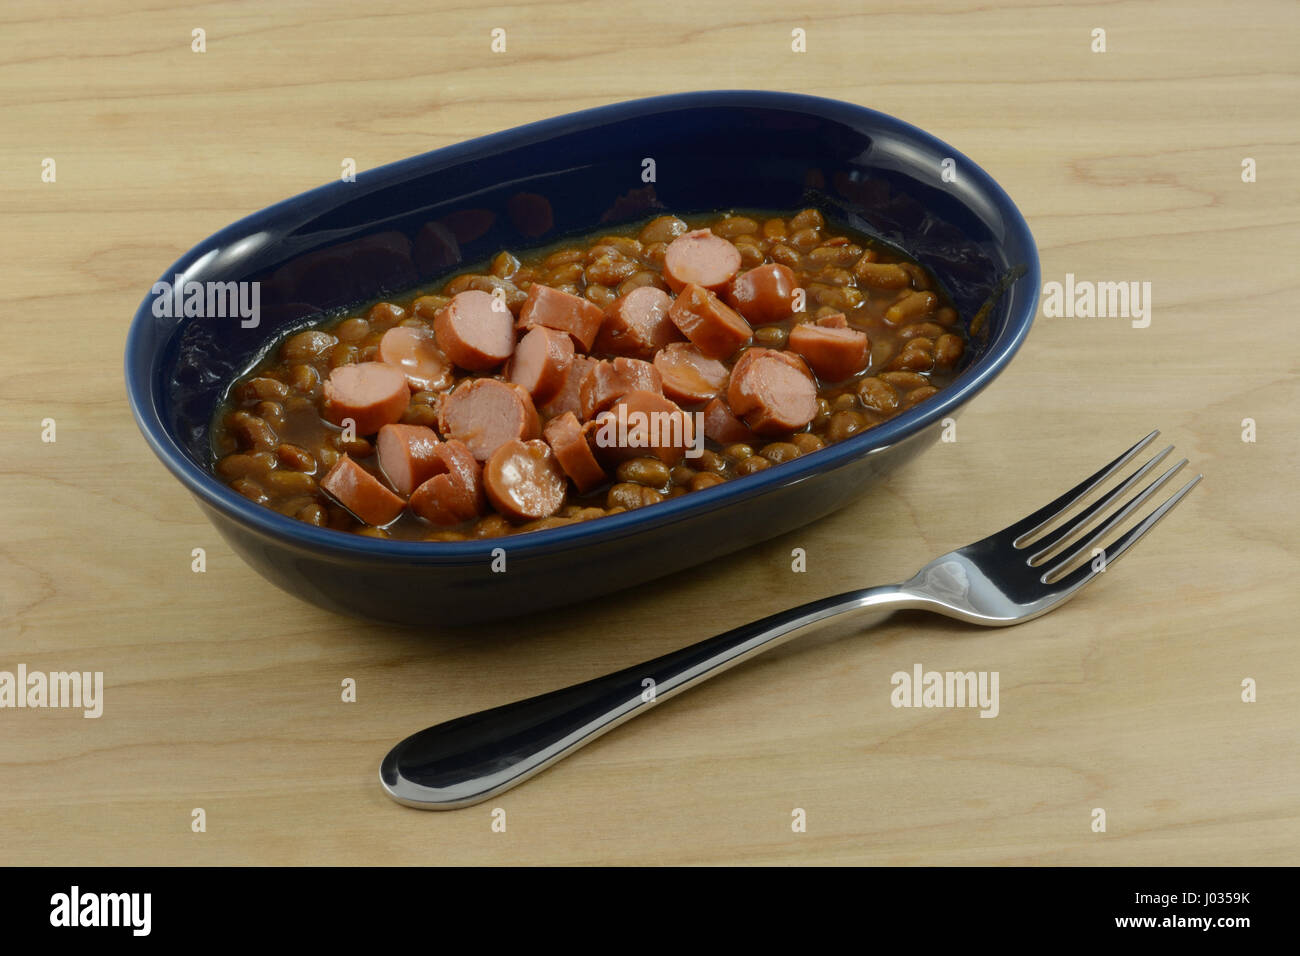 Türkei-Hot-Dog-Würstchen und gebackene Bohnen in blau Schüssel geschnitten Stockfoto